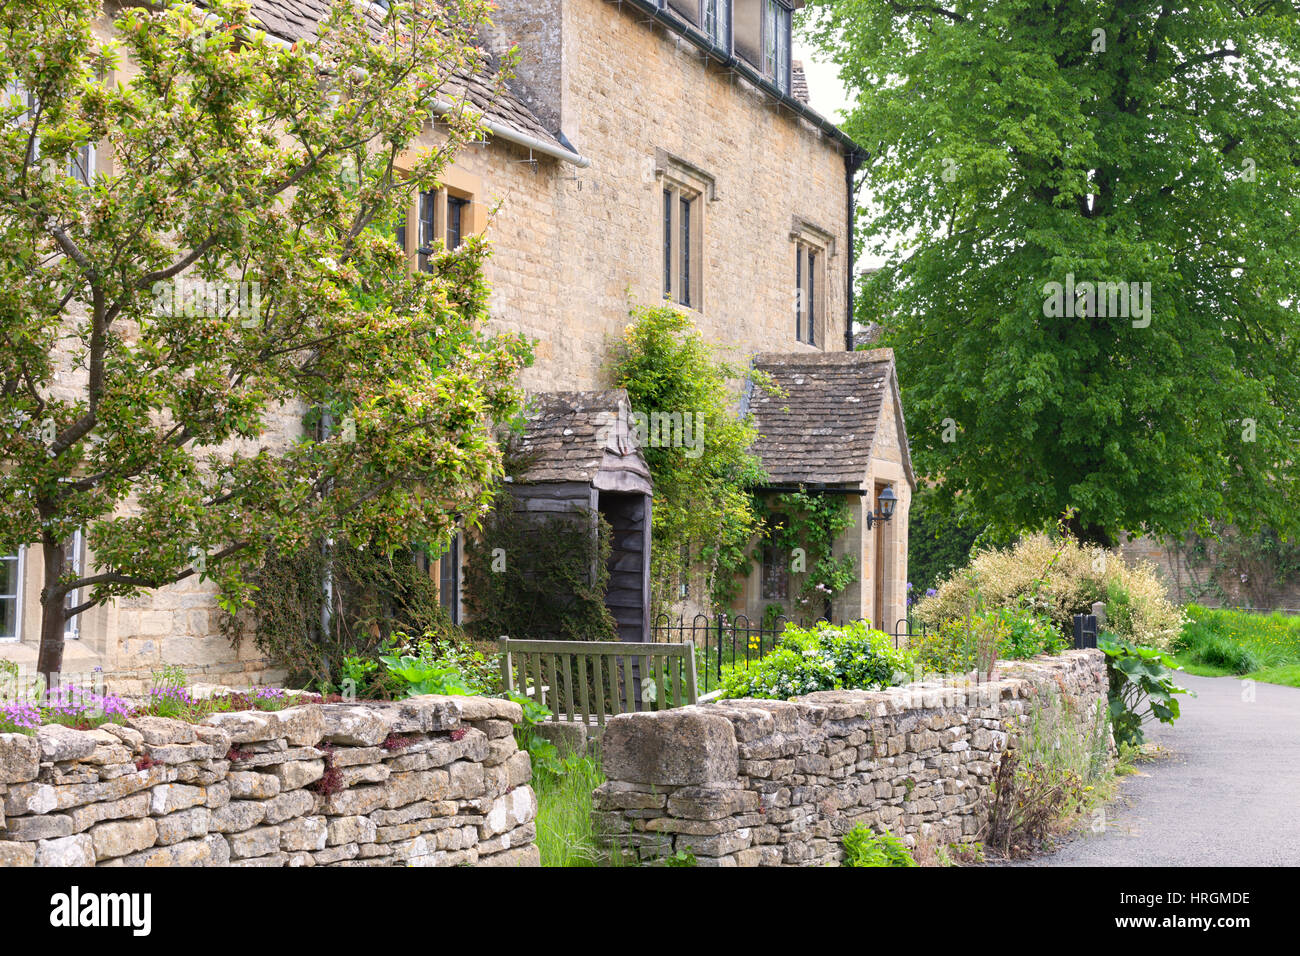 Tradizionale cottage inglese con giardini frontali racchiuso da un secco muro di pietra, da un sentiero, in un villaggio rurale . Foto Stock